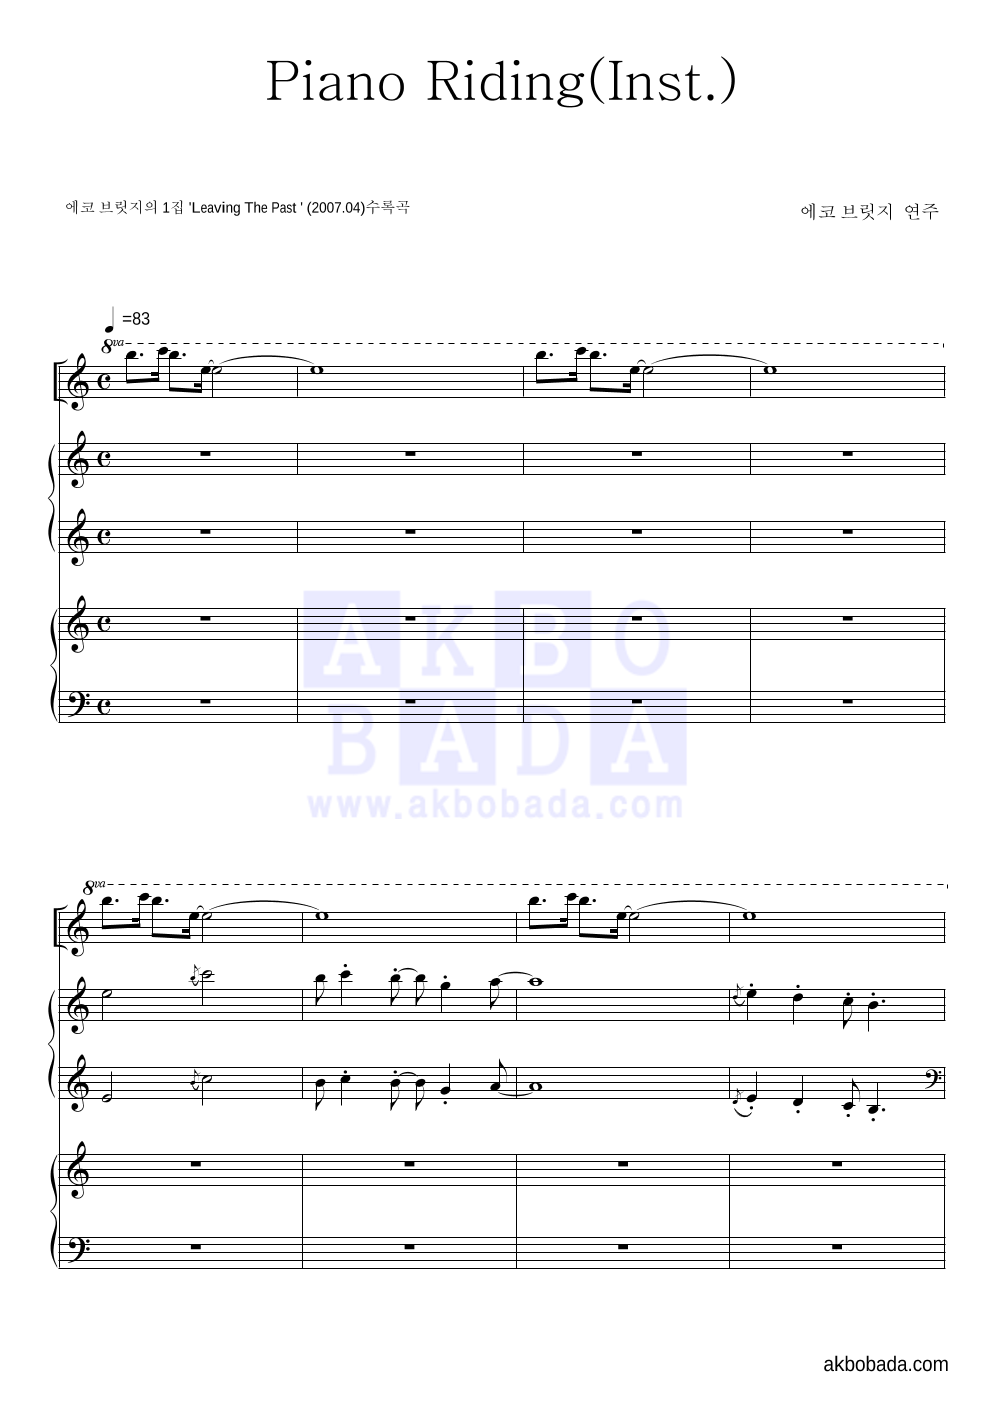 에코 브릿지 - Piano Riding(Inst.) Solo&피아노 악보 